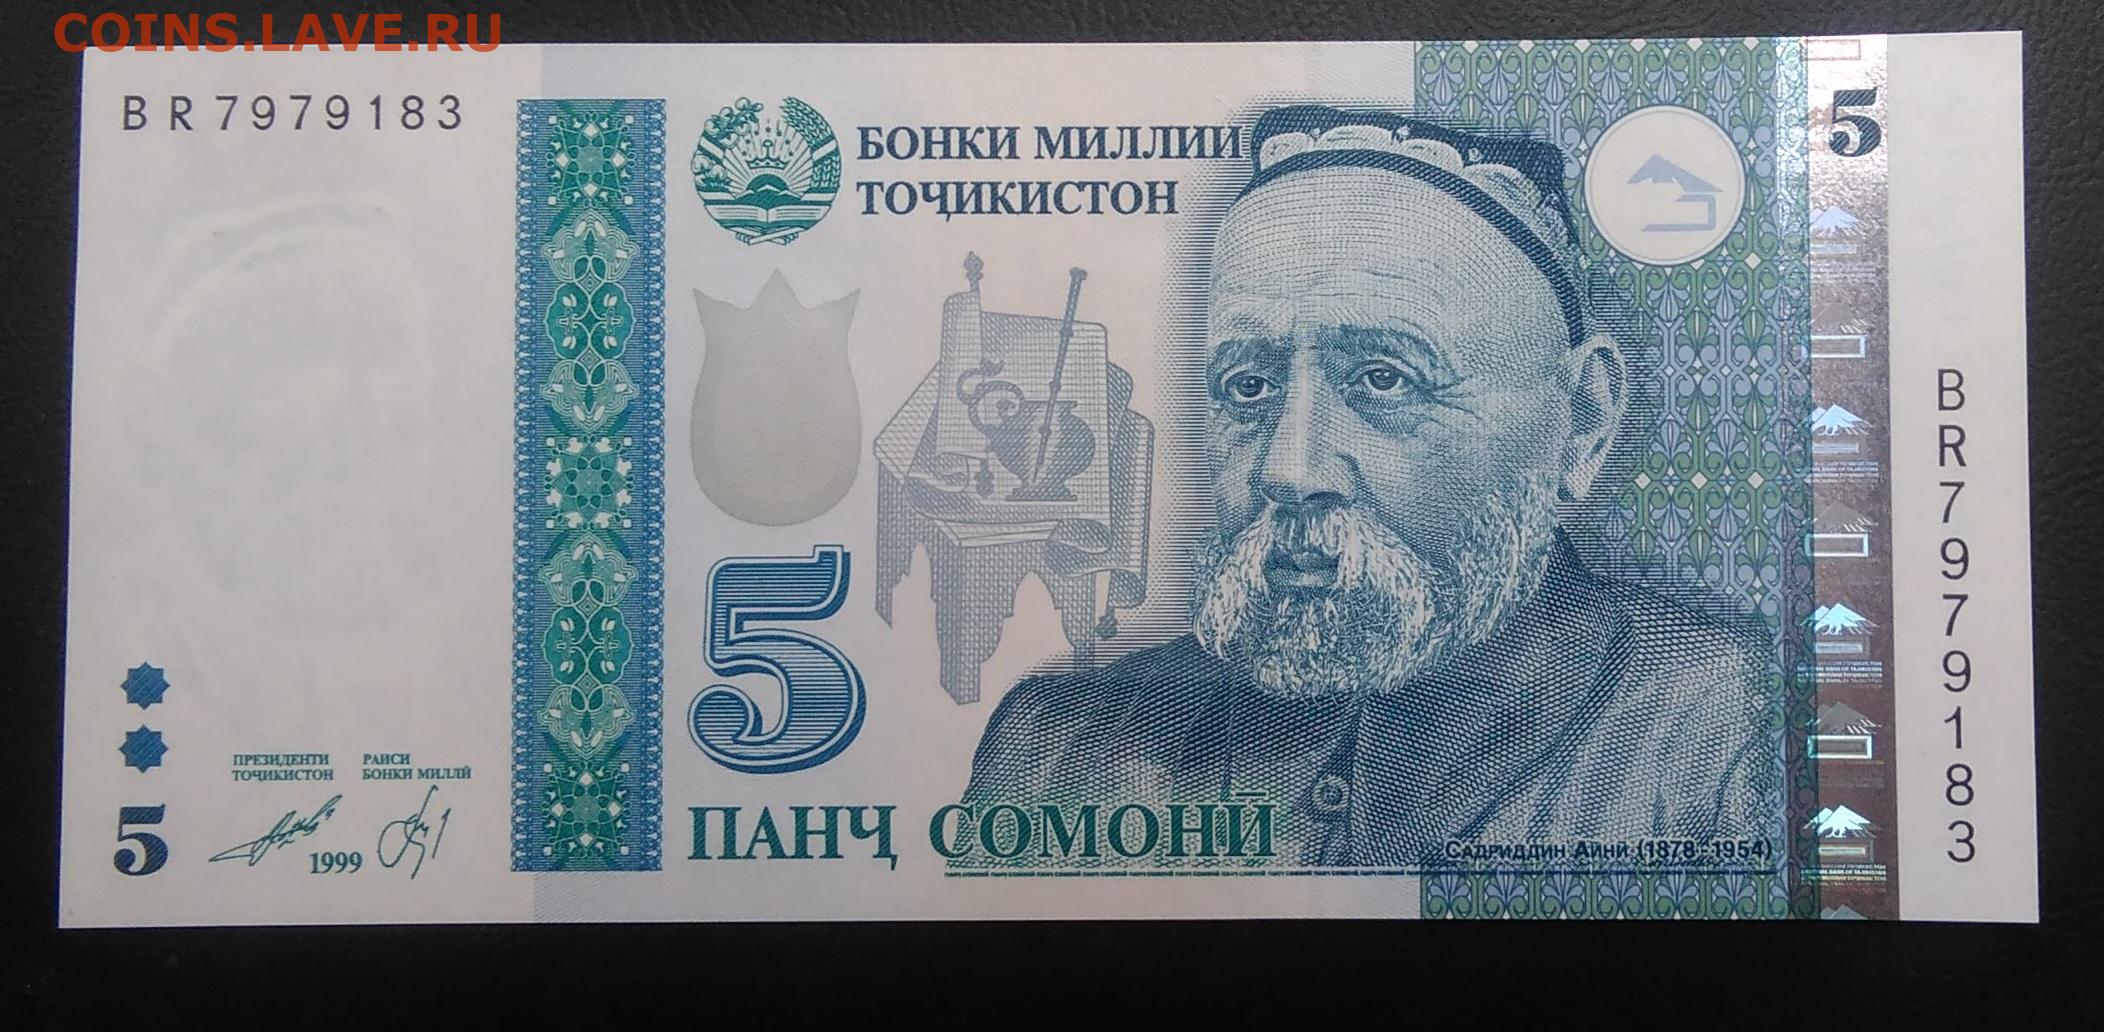 Сомони в сумах. 5 Сомони 1999 Таджикистан. Банкноты Таджикистана: 5 Сомони. Купюры Таджикистана 1000 Сомони. Банкнота 10 Сомони 1999 год Таджикистан.